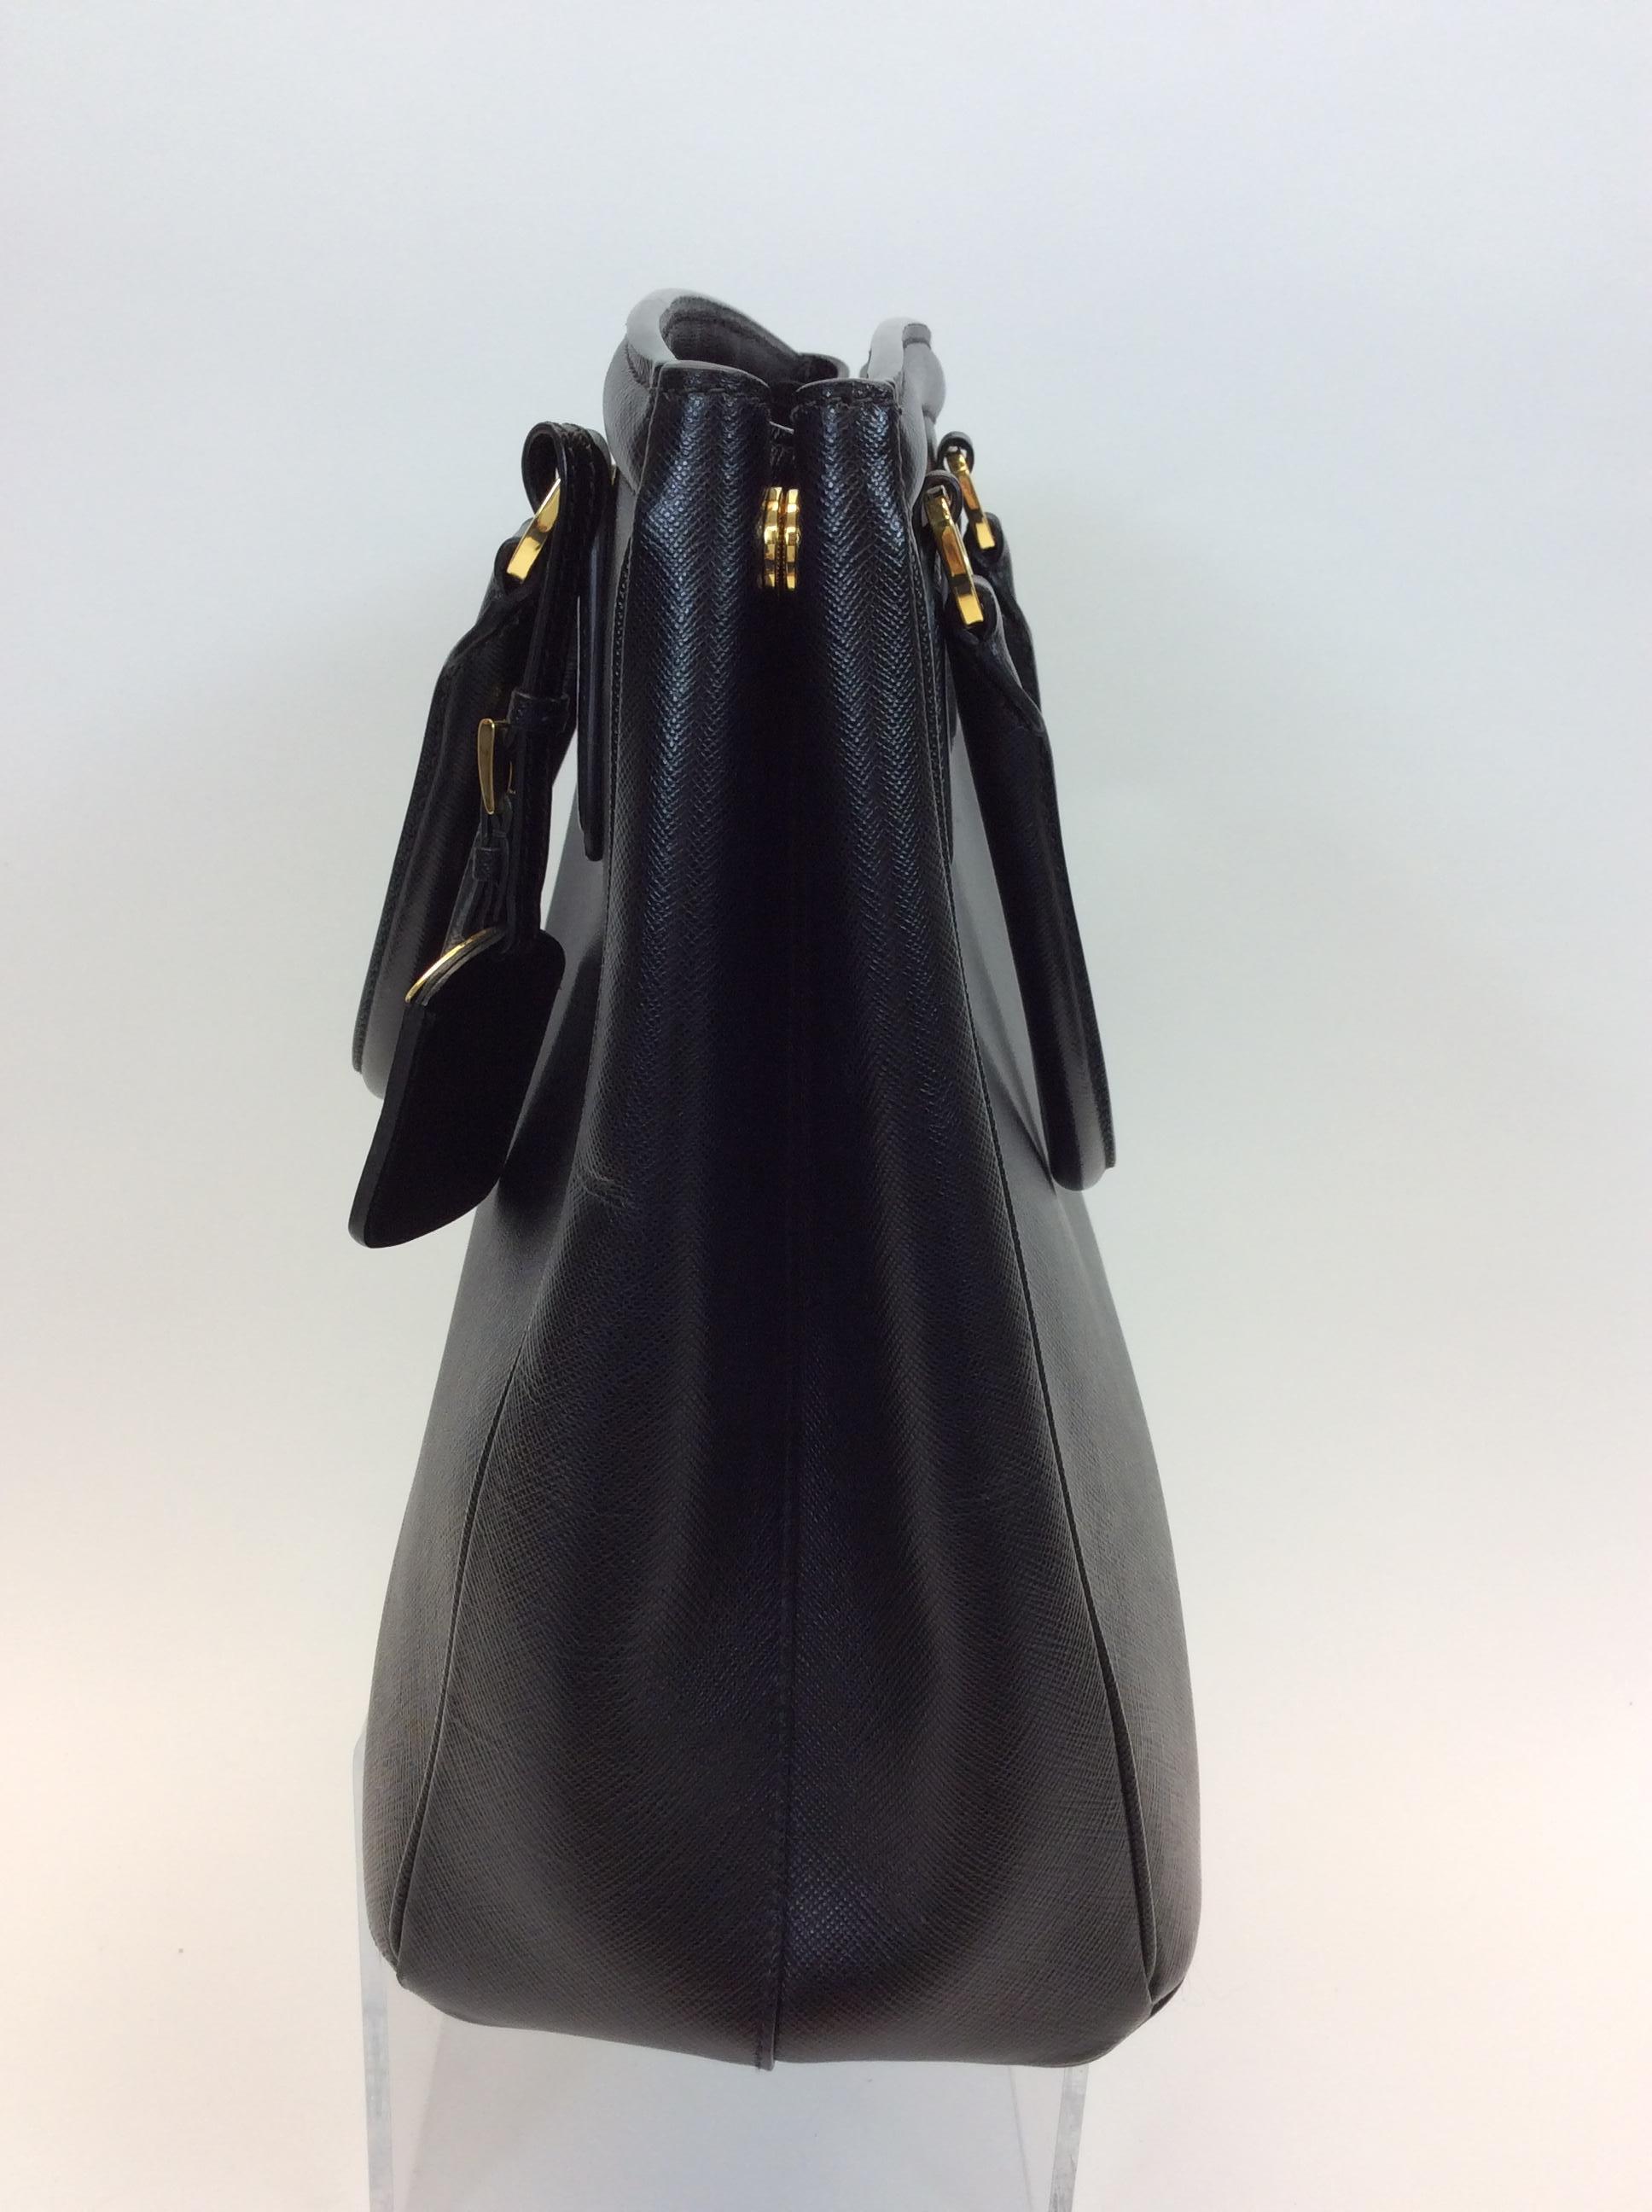 Prada Black Saffiano Parabole Tote
$999
Made in Italy
Leather
12.5